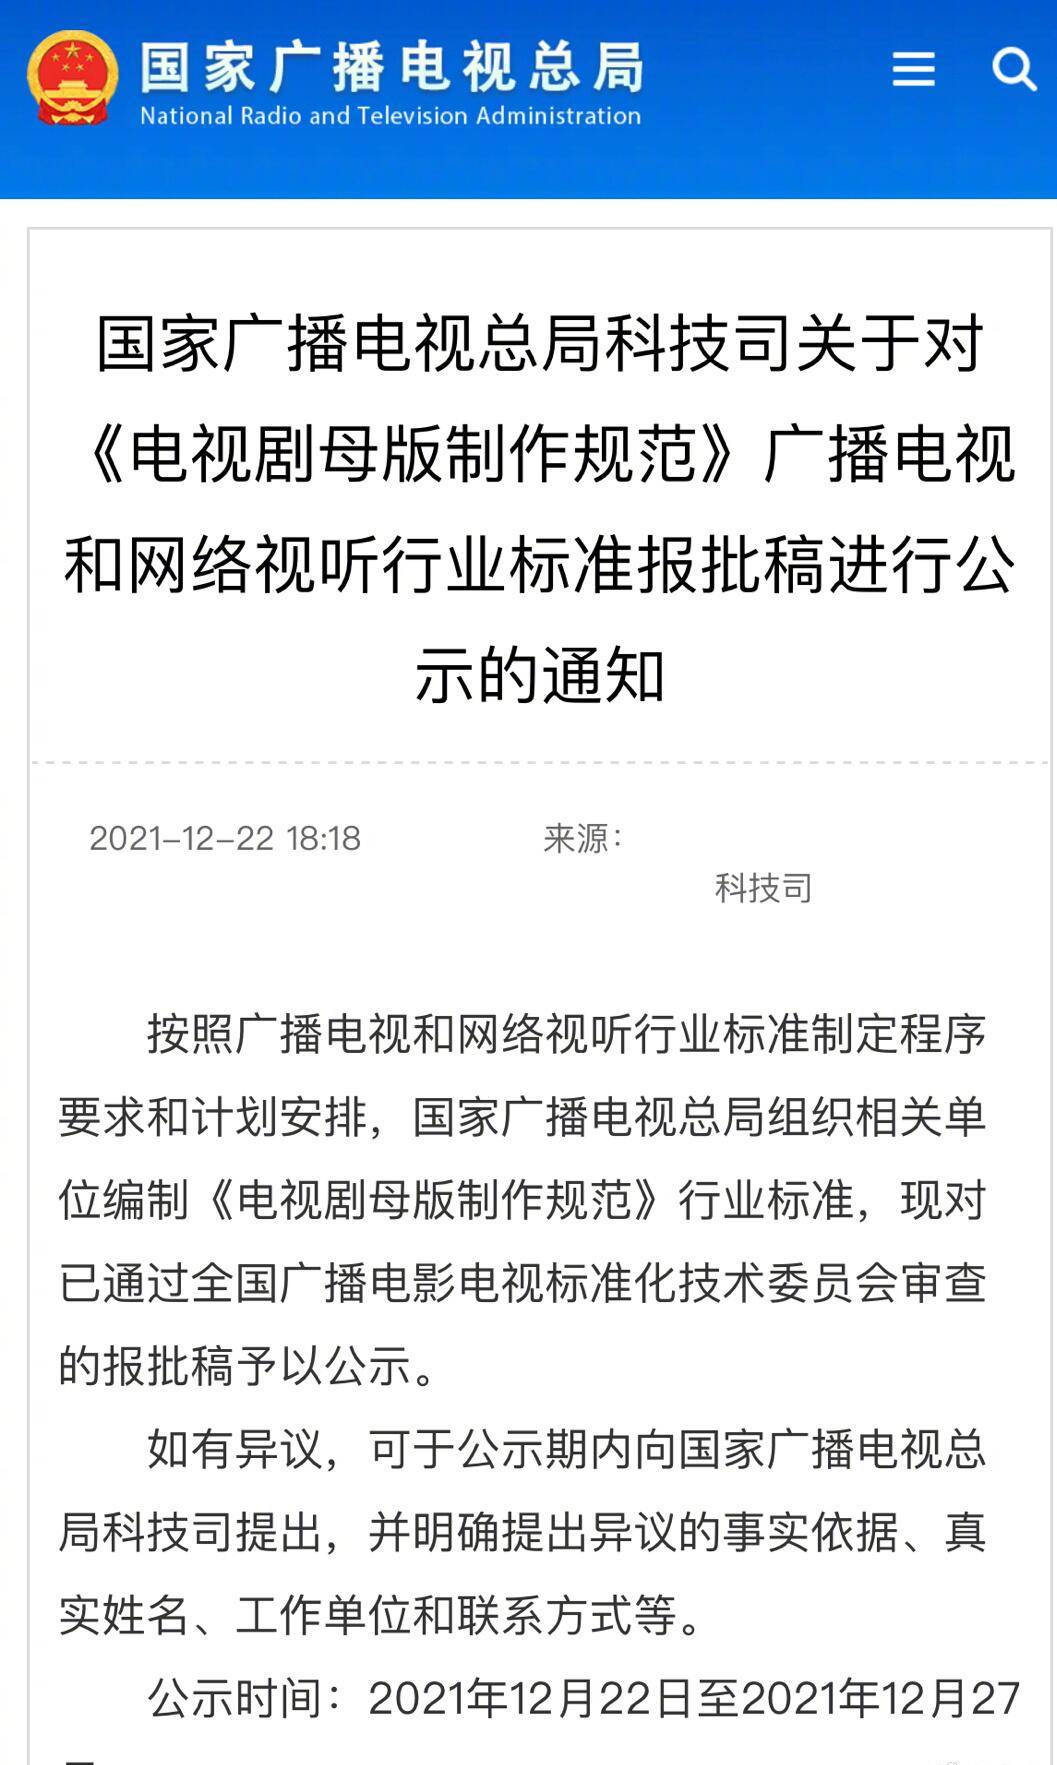 广电总局在官网公示《电视剧母版制作规范》